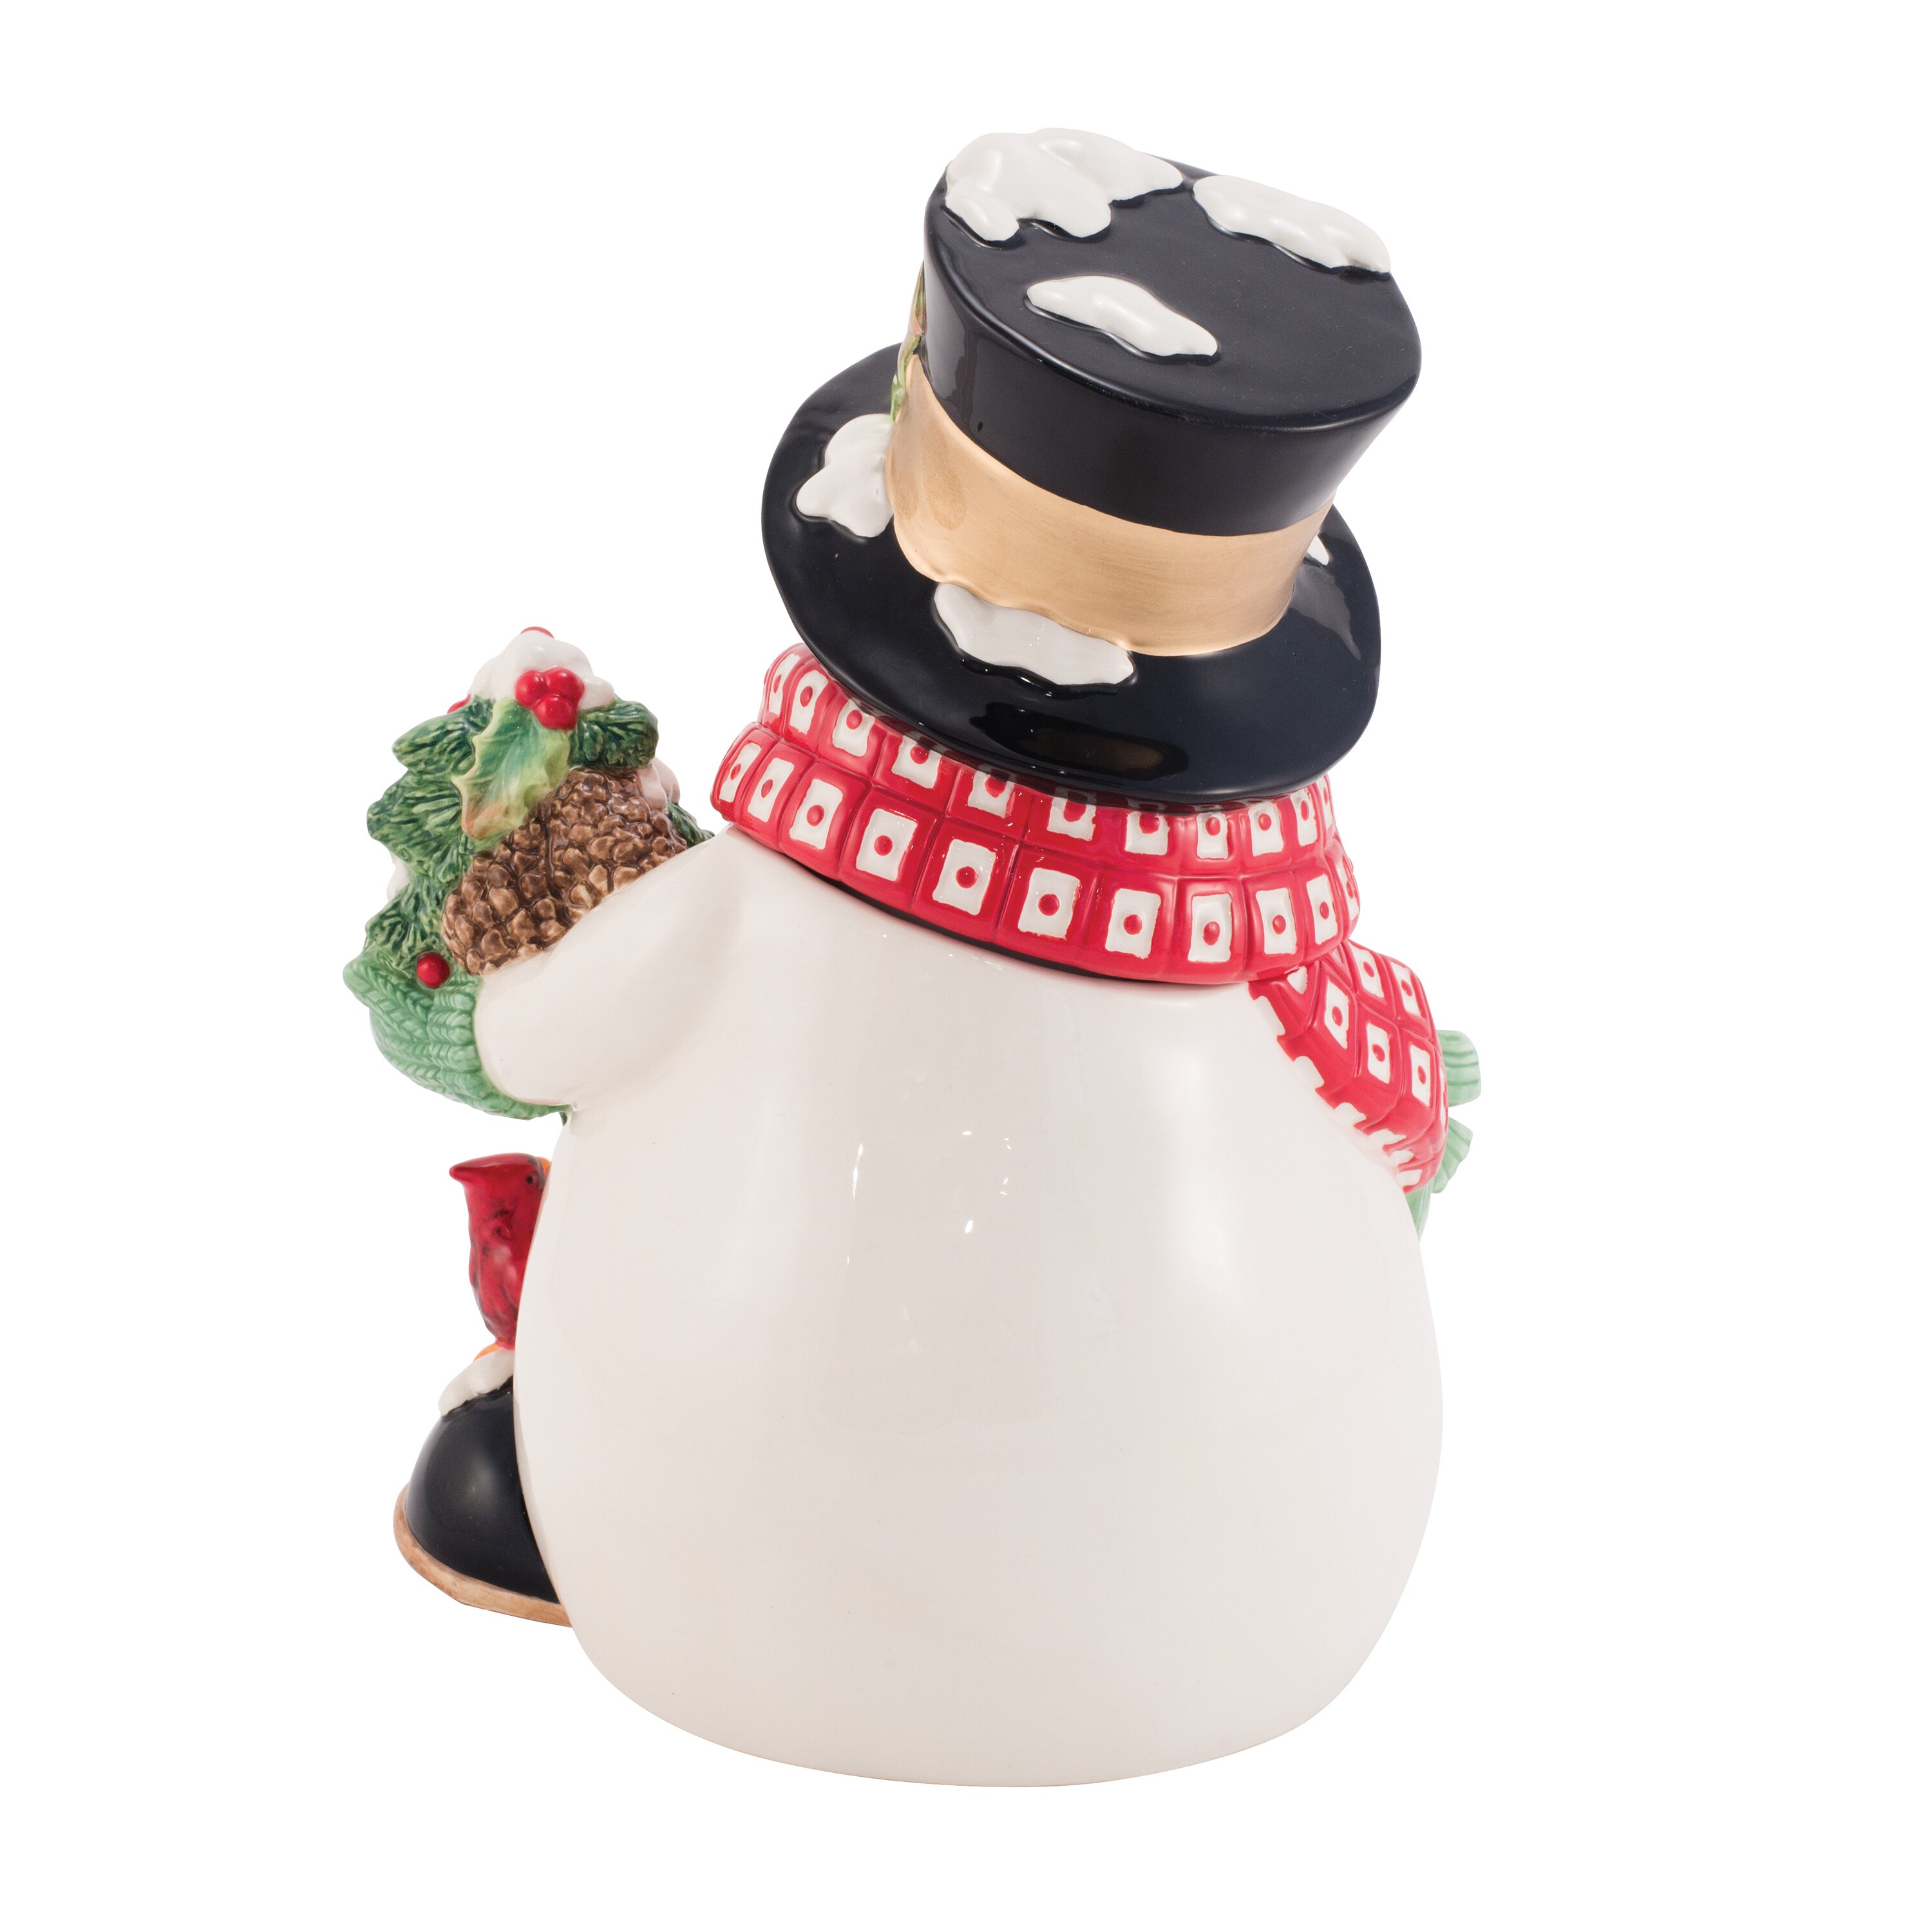 Snowman cookie jar vintage